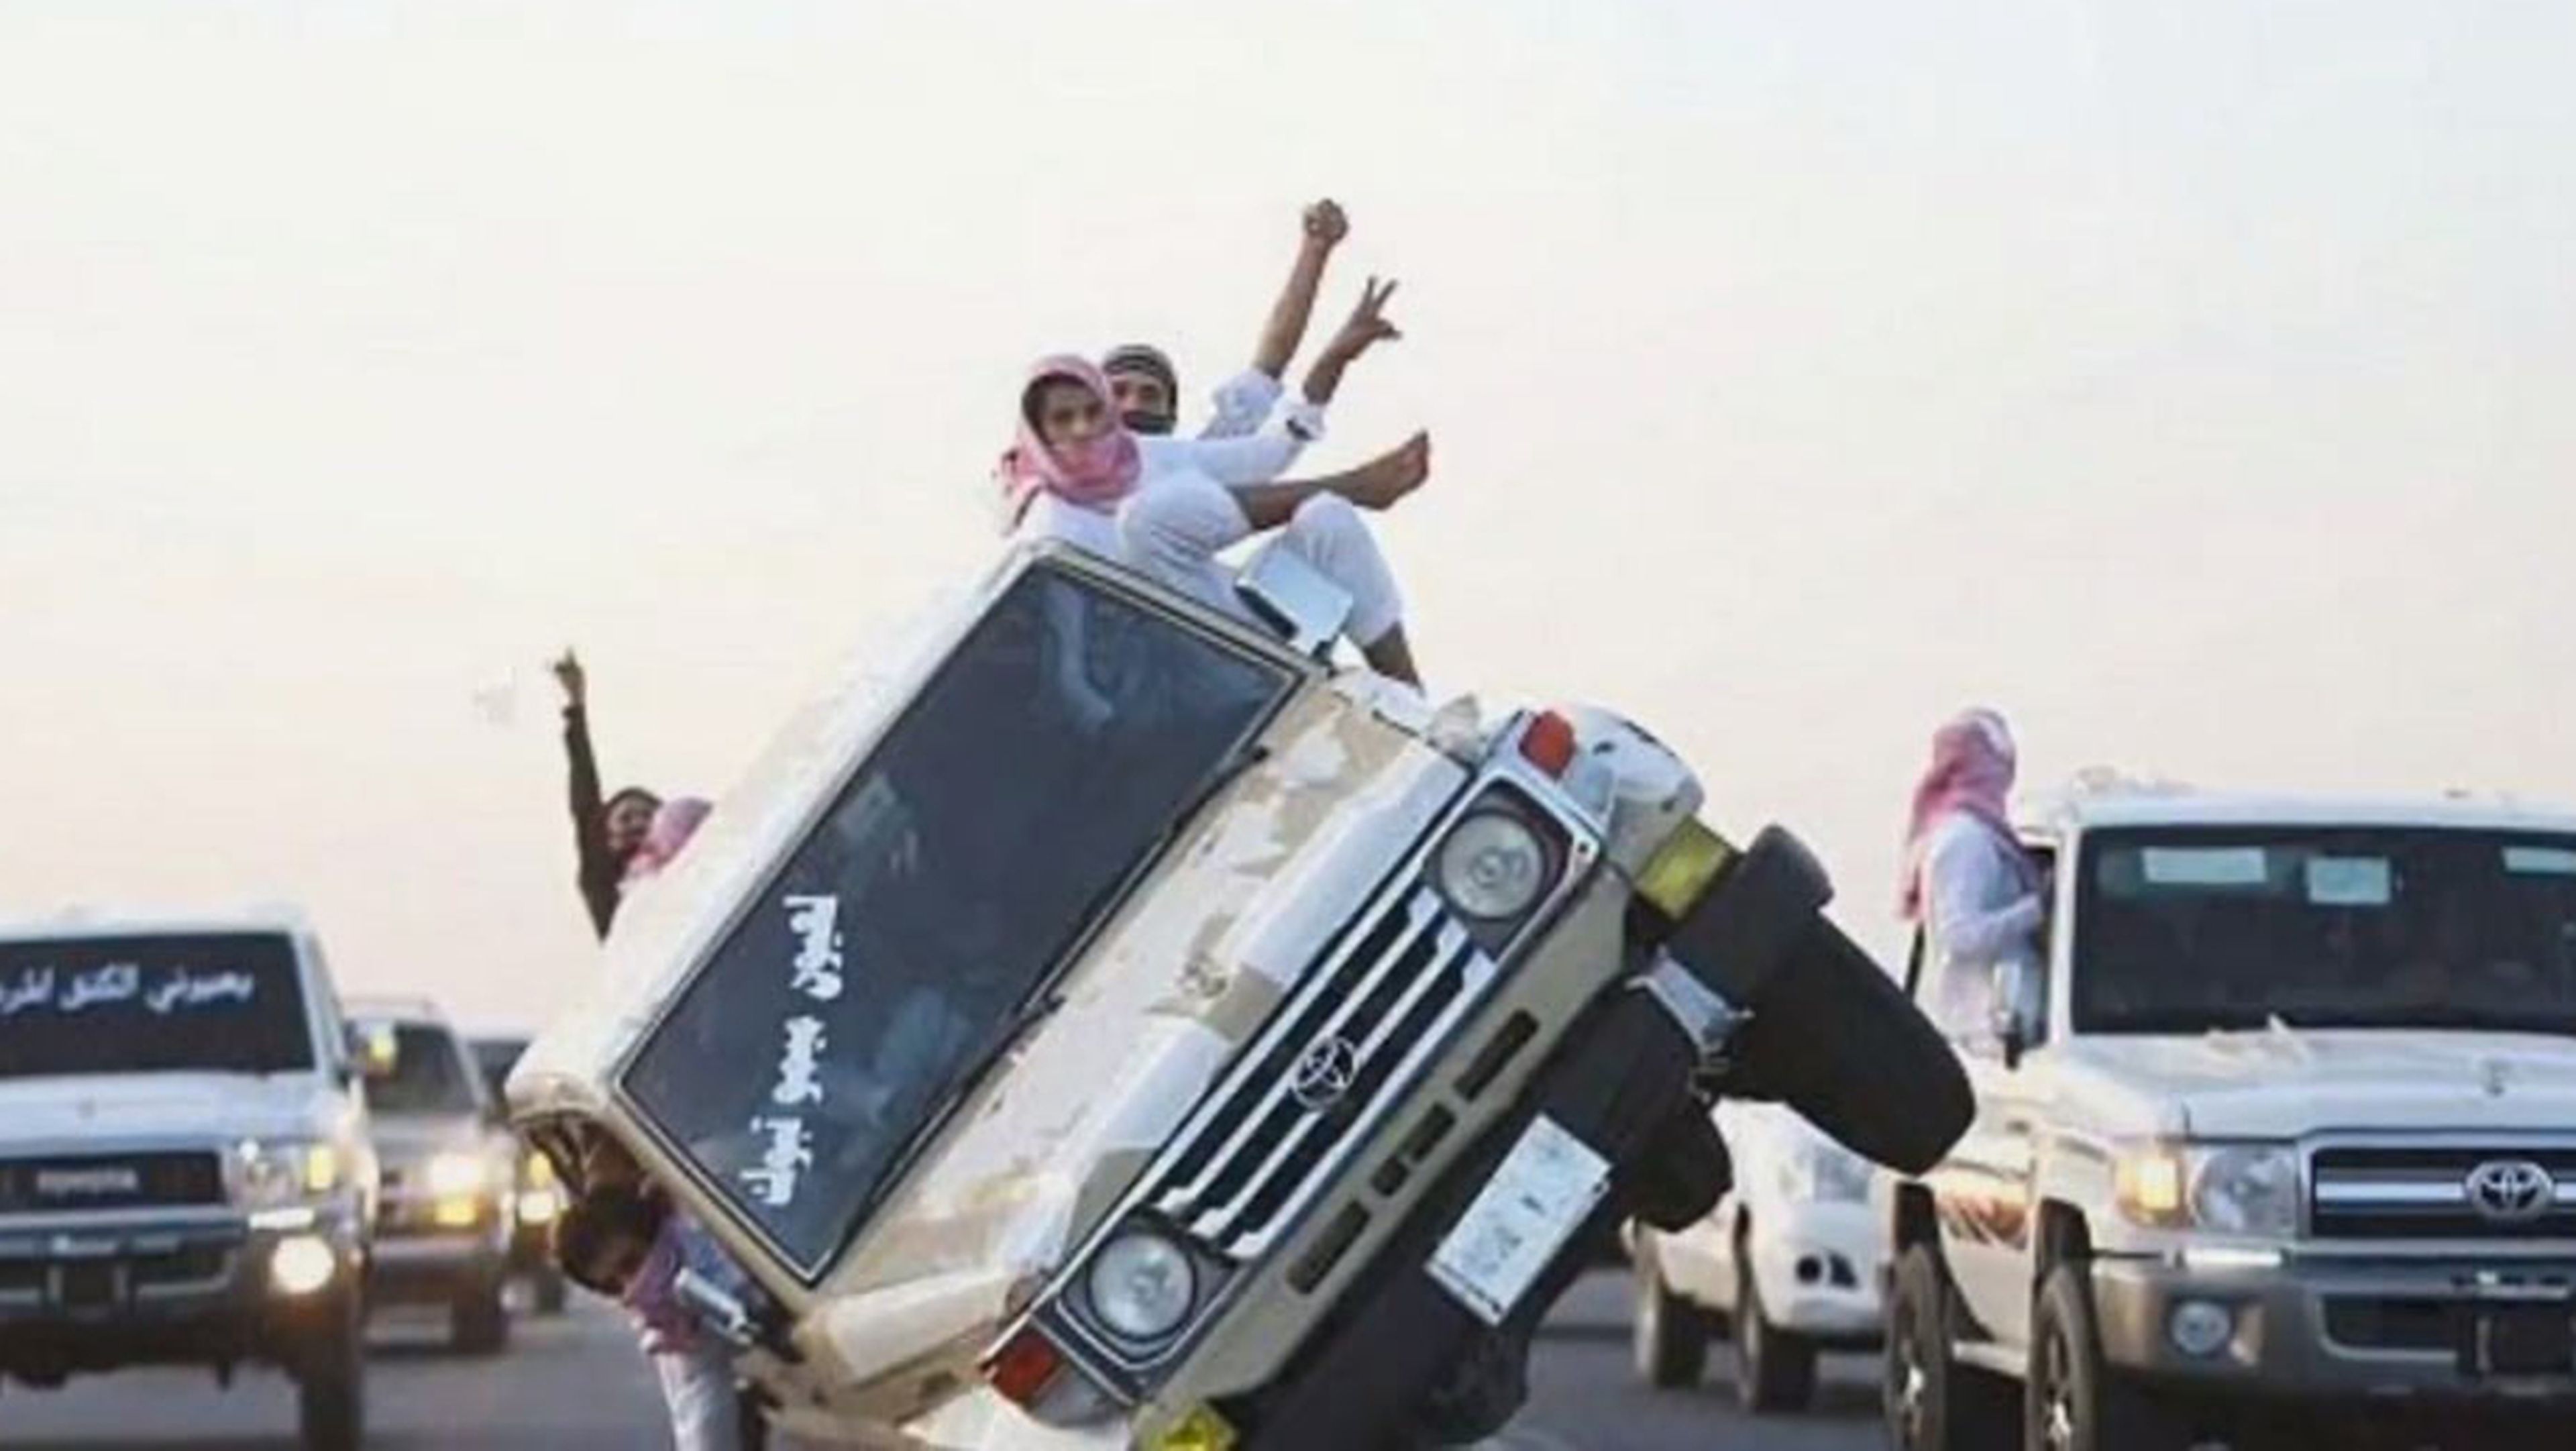 Subastan en Arabia 923 vehículos